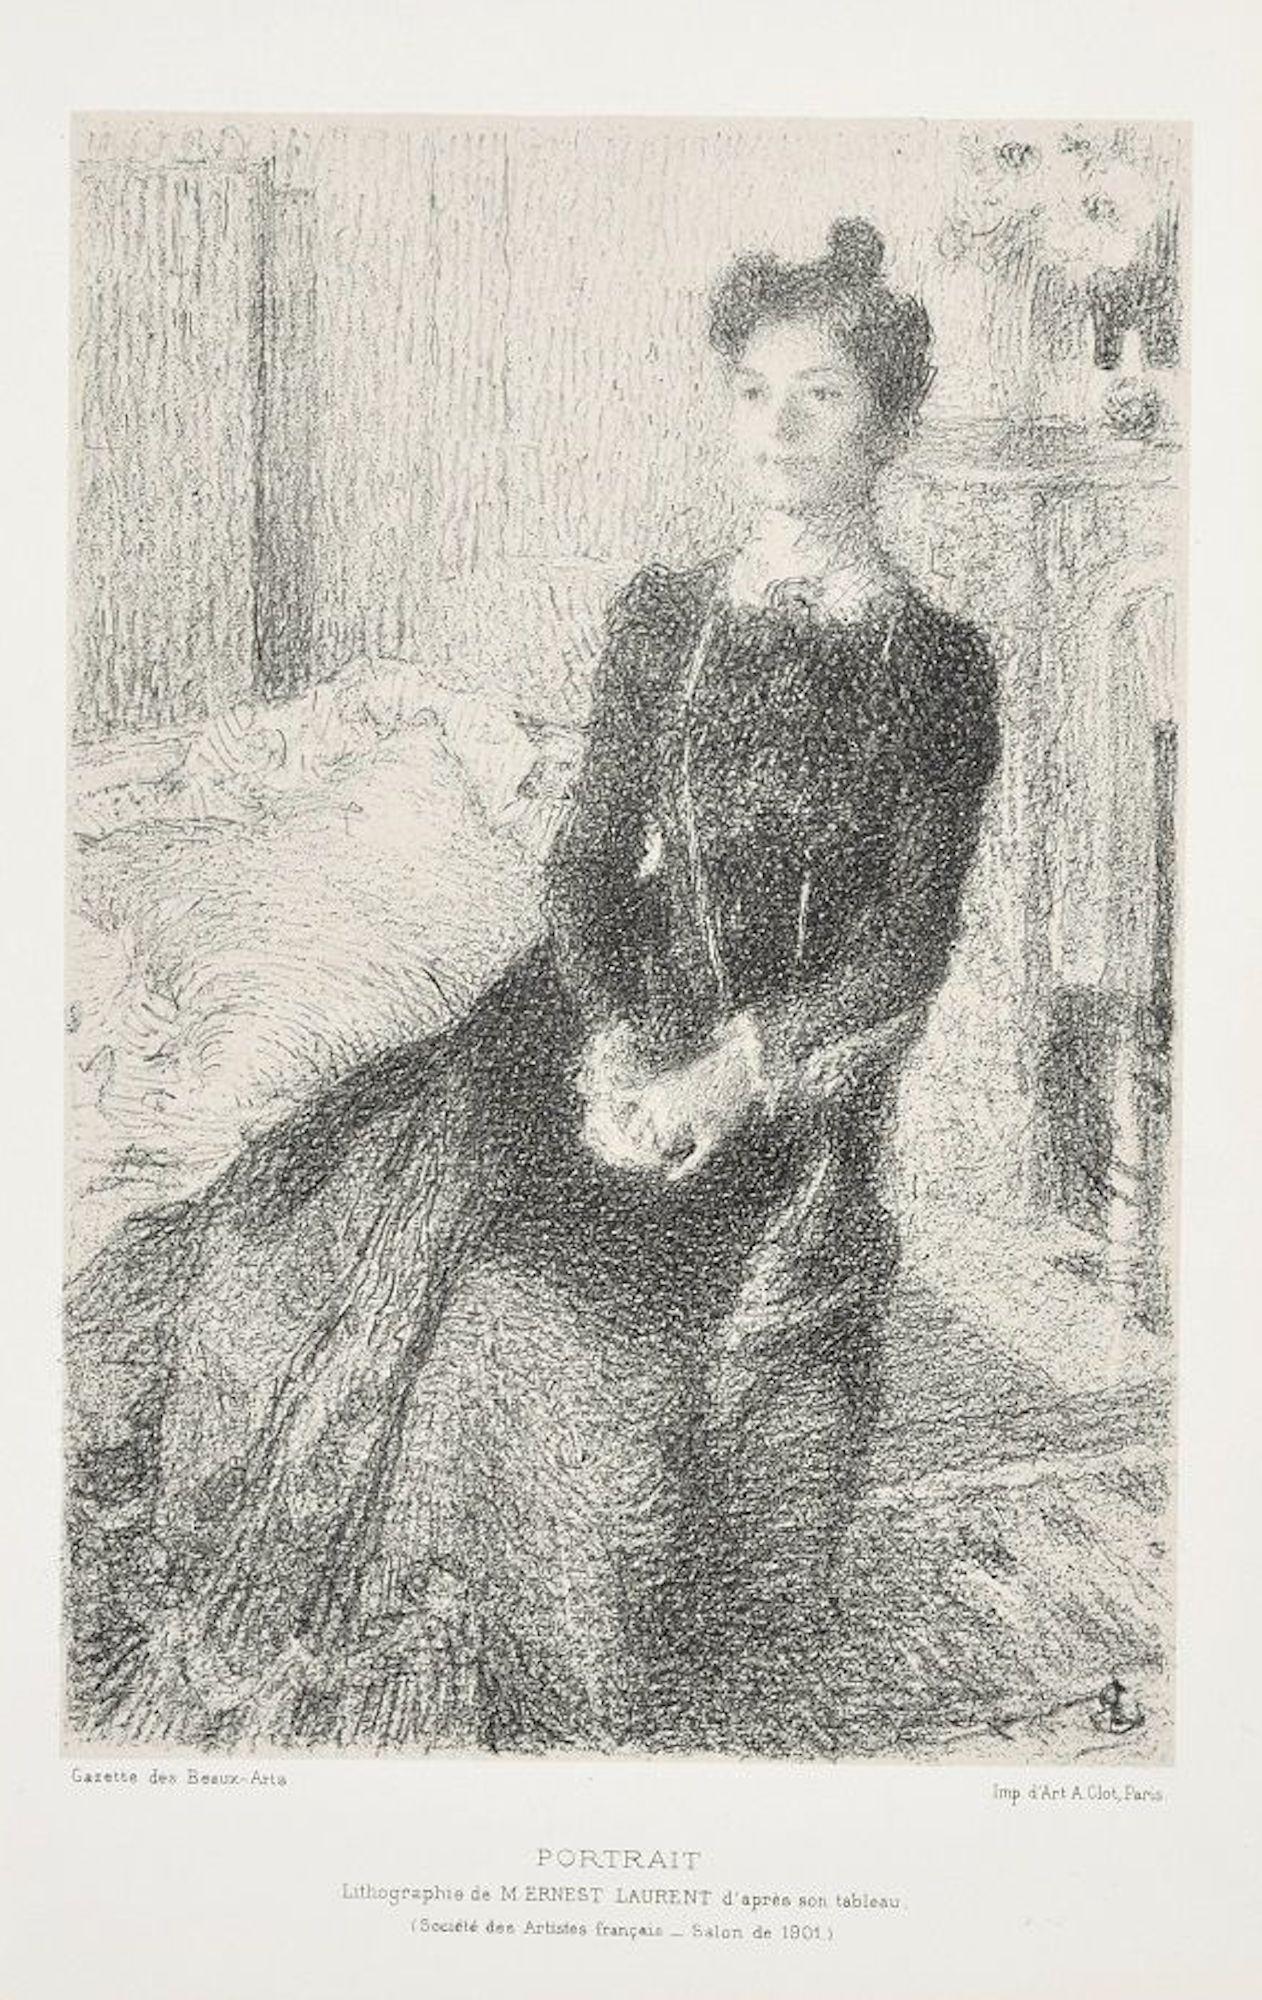 Portrait of Woman - Lithograph by E. Laurent - 1901 ca.